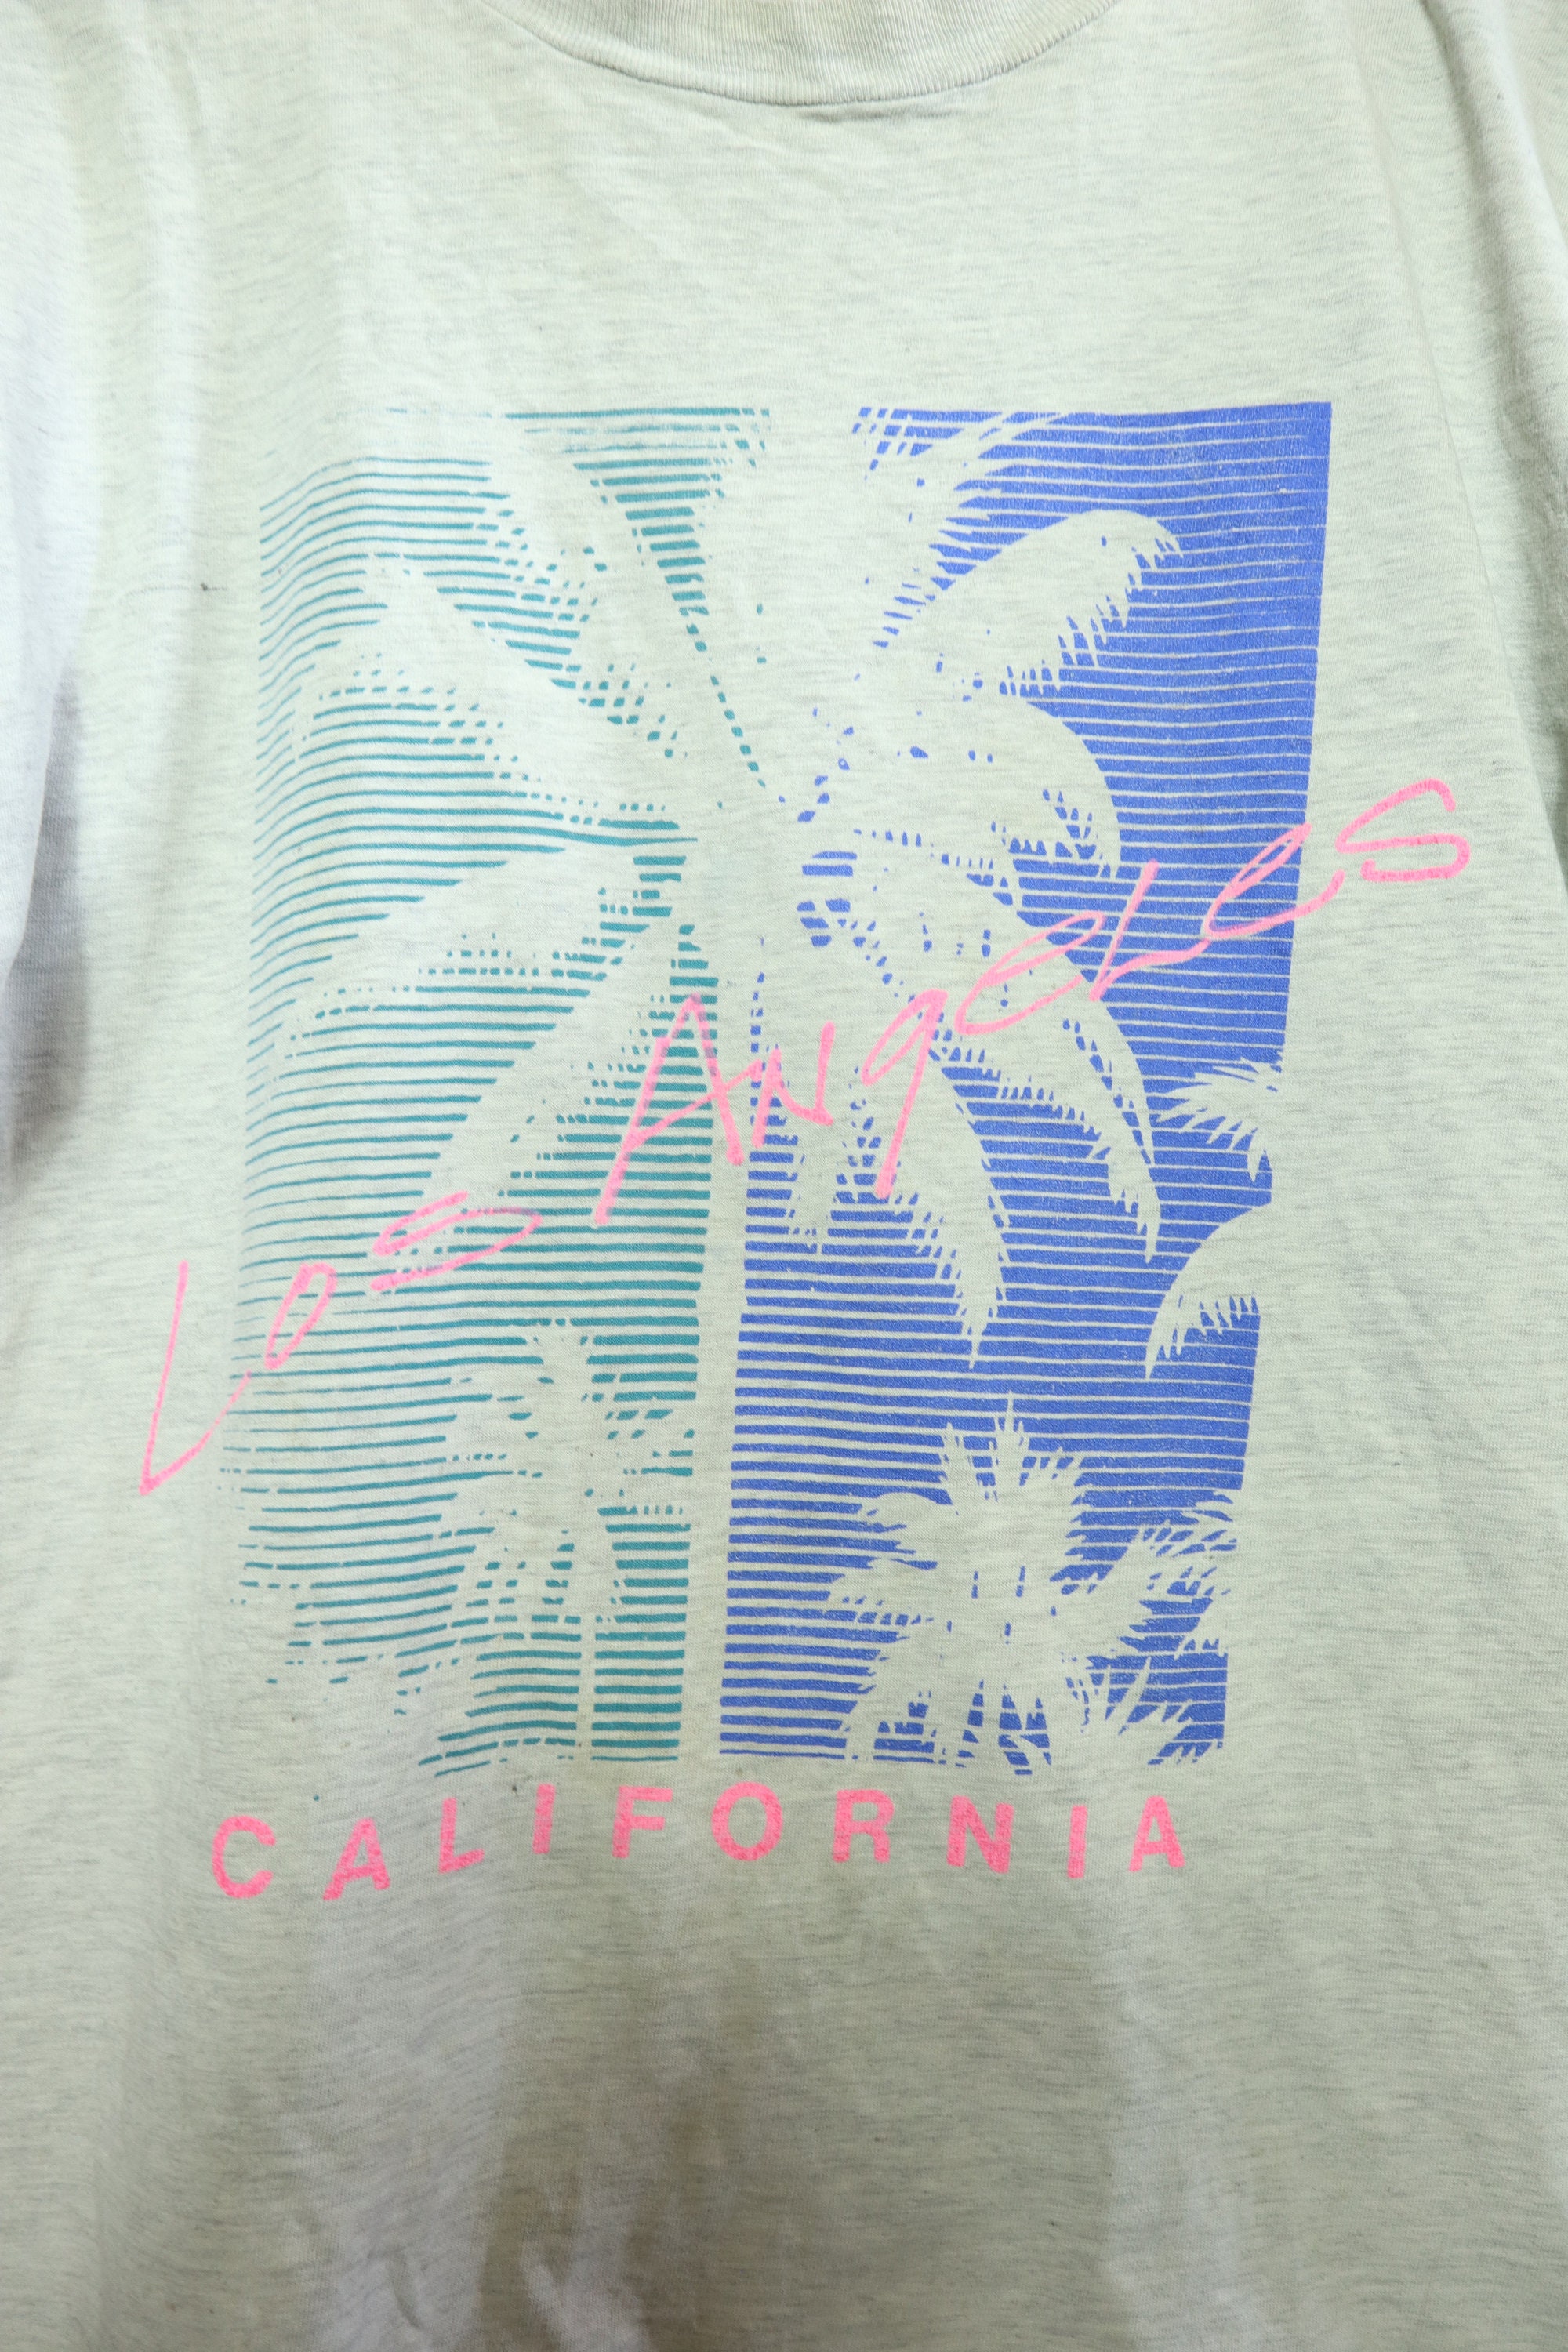 Los Angeles California palm tree 1990's vintage Tshirt